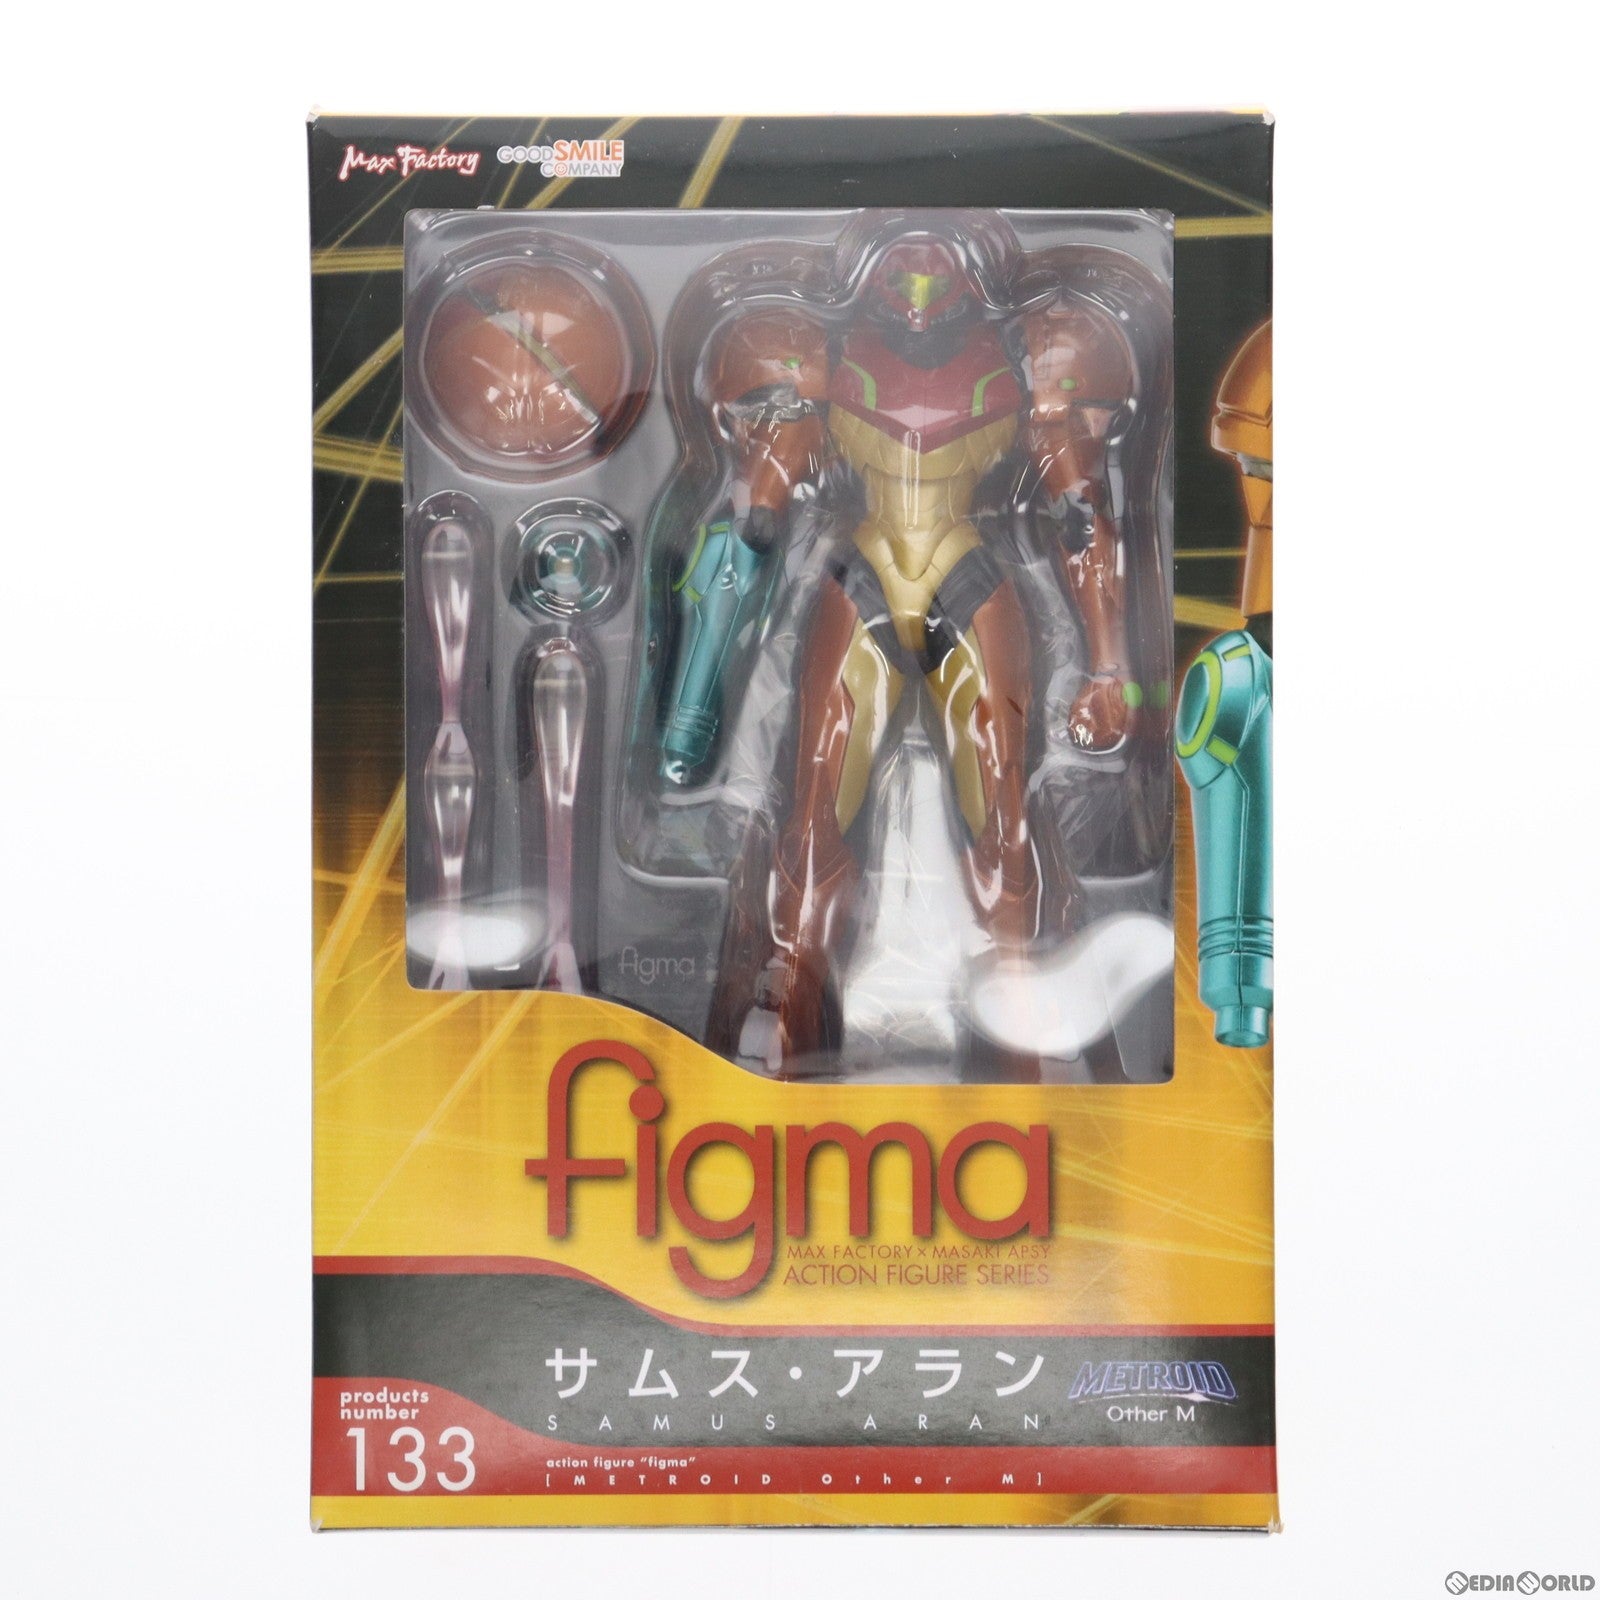 【中古即納】[FIG]figma(フィグマ) 133 サムス・アラン METROID Other M(メトロイド アザーエム) 完成品 可動フィギュア  グッドスマイルカンパニー(20120708)